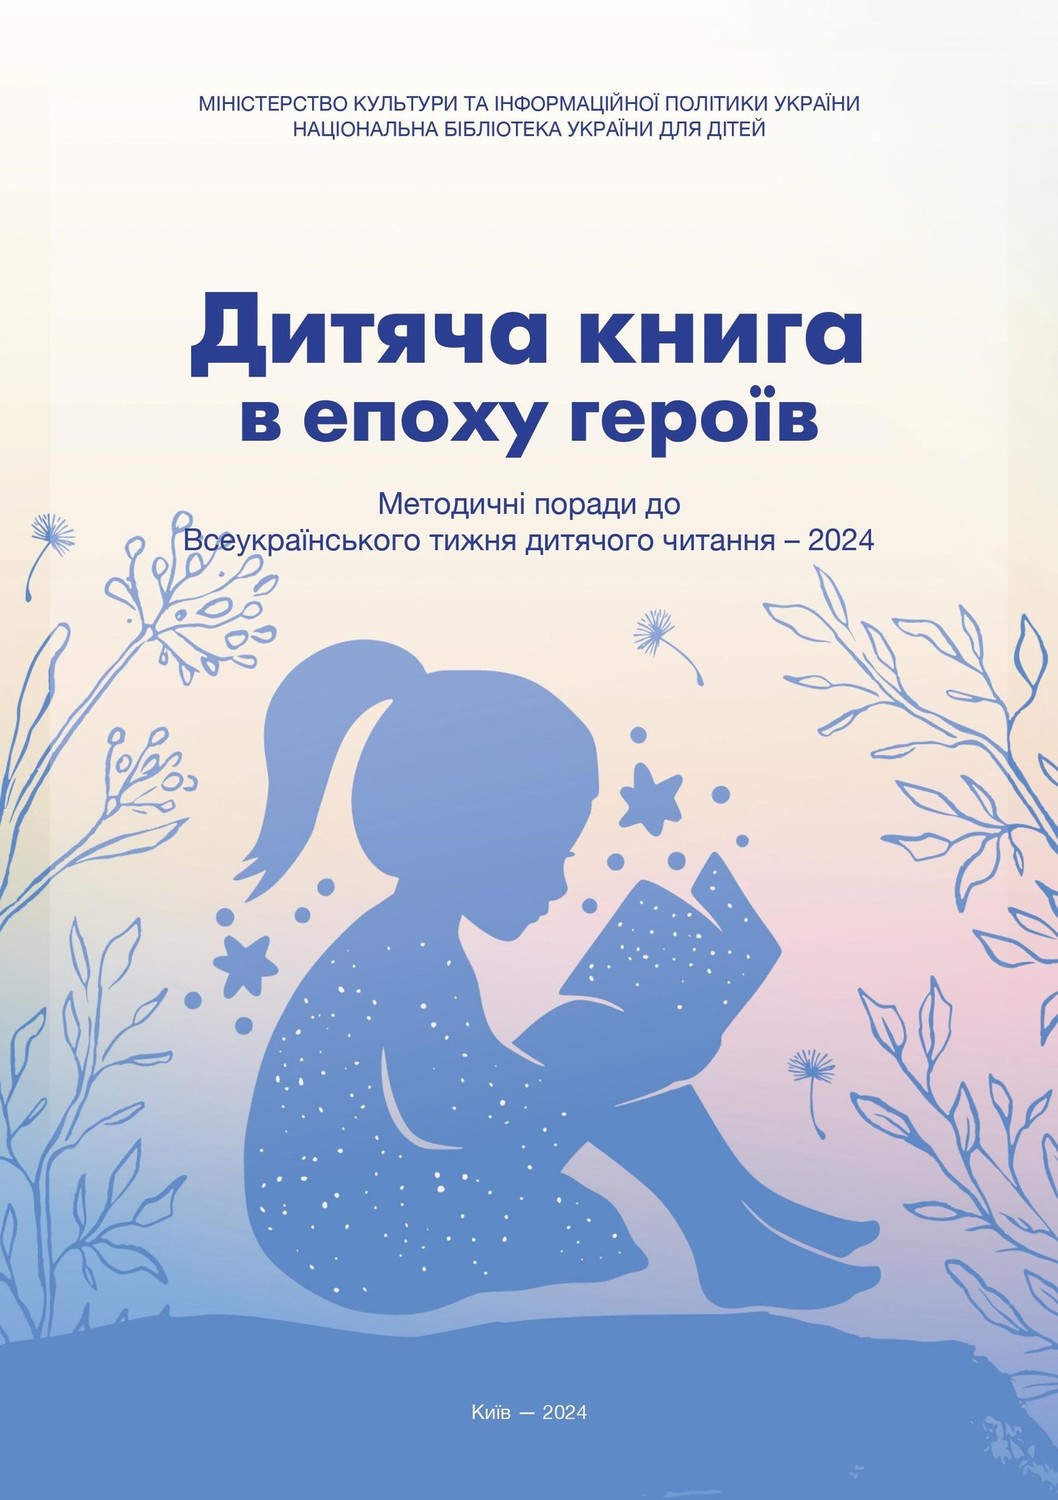 Стартував Всеукраїнський Тиждень дитячого читання - 2024